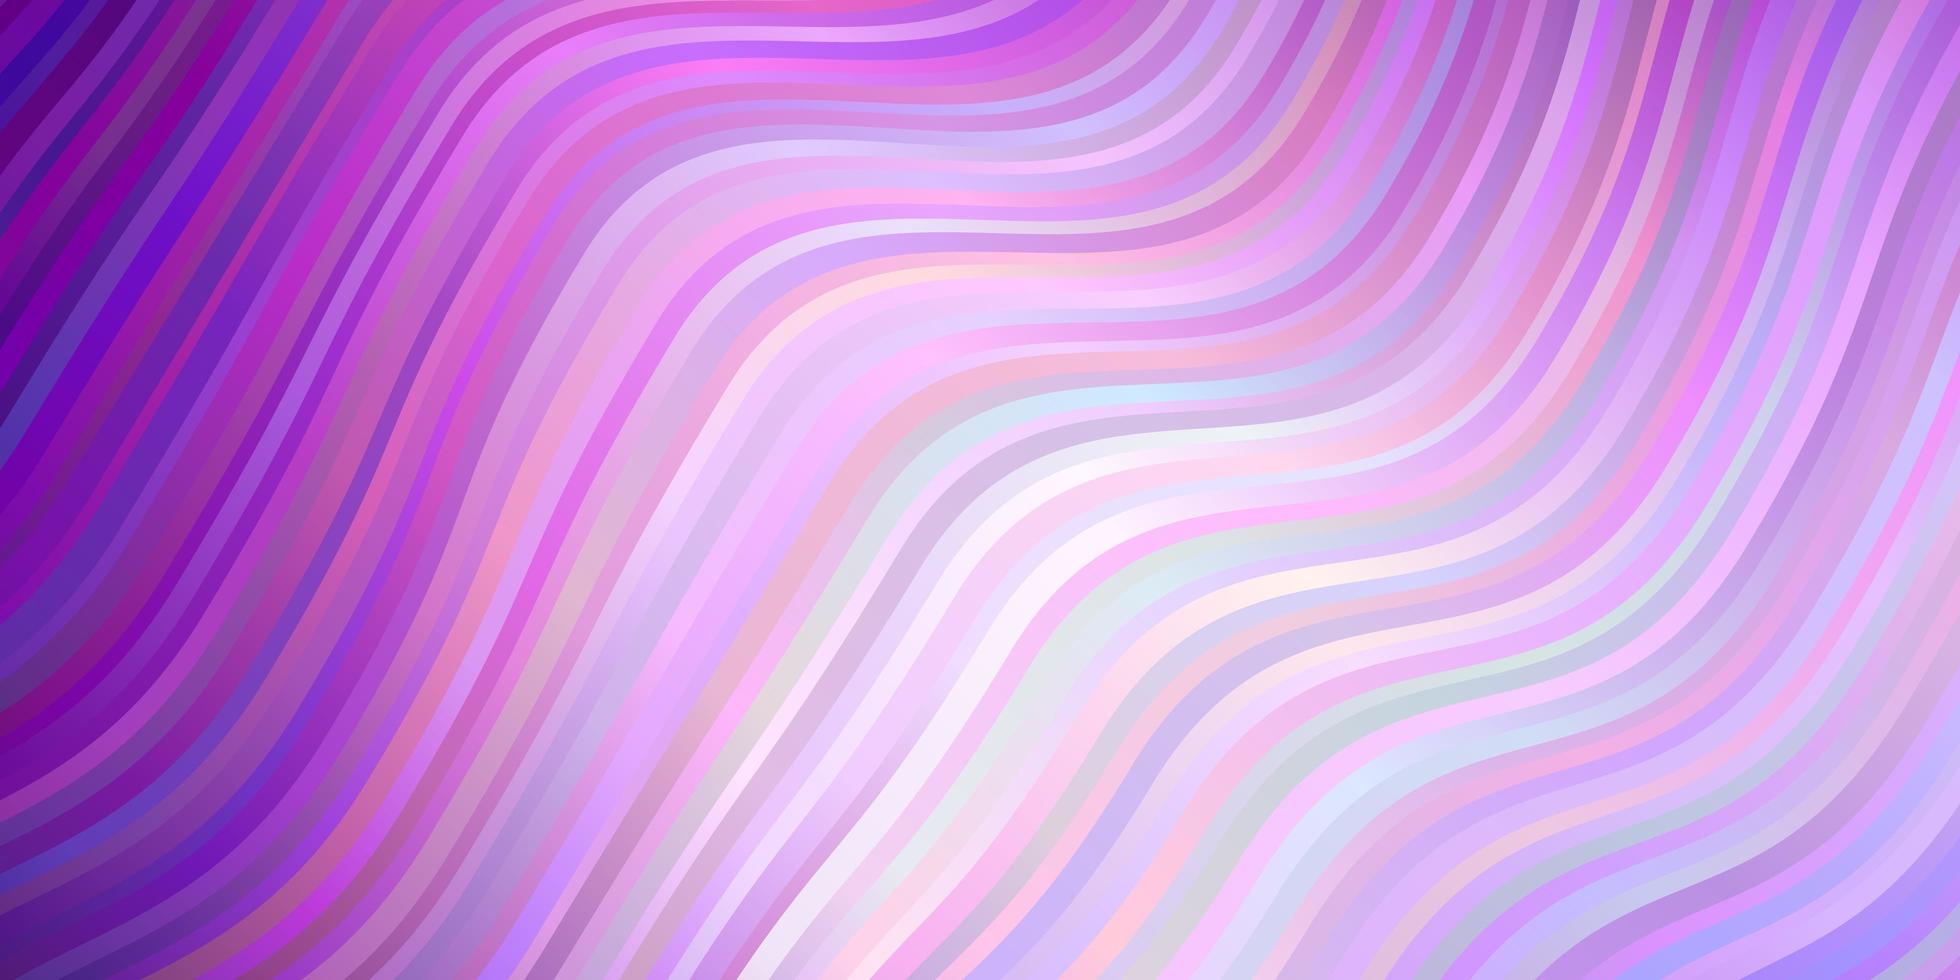 sfondo vettoriale viola chiaro con curve.